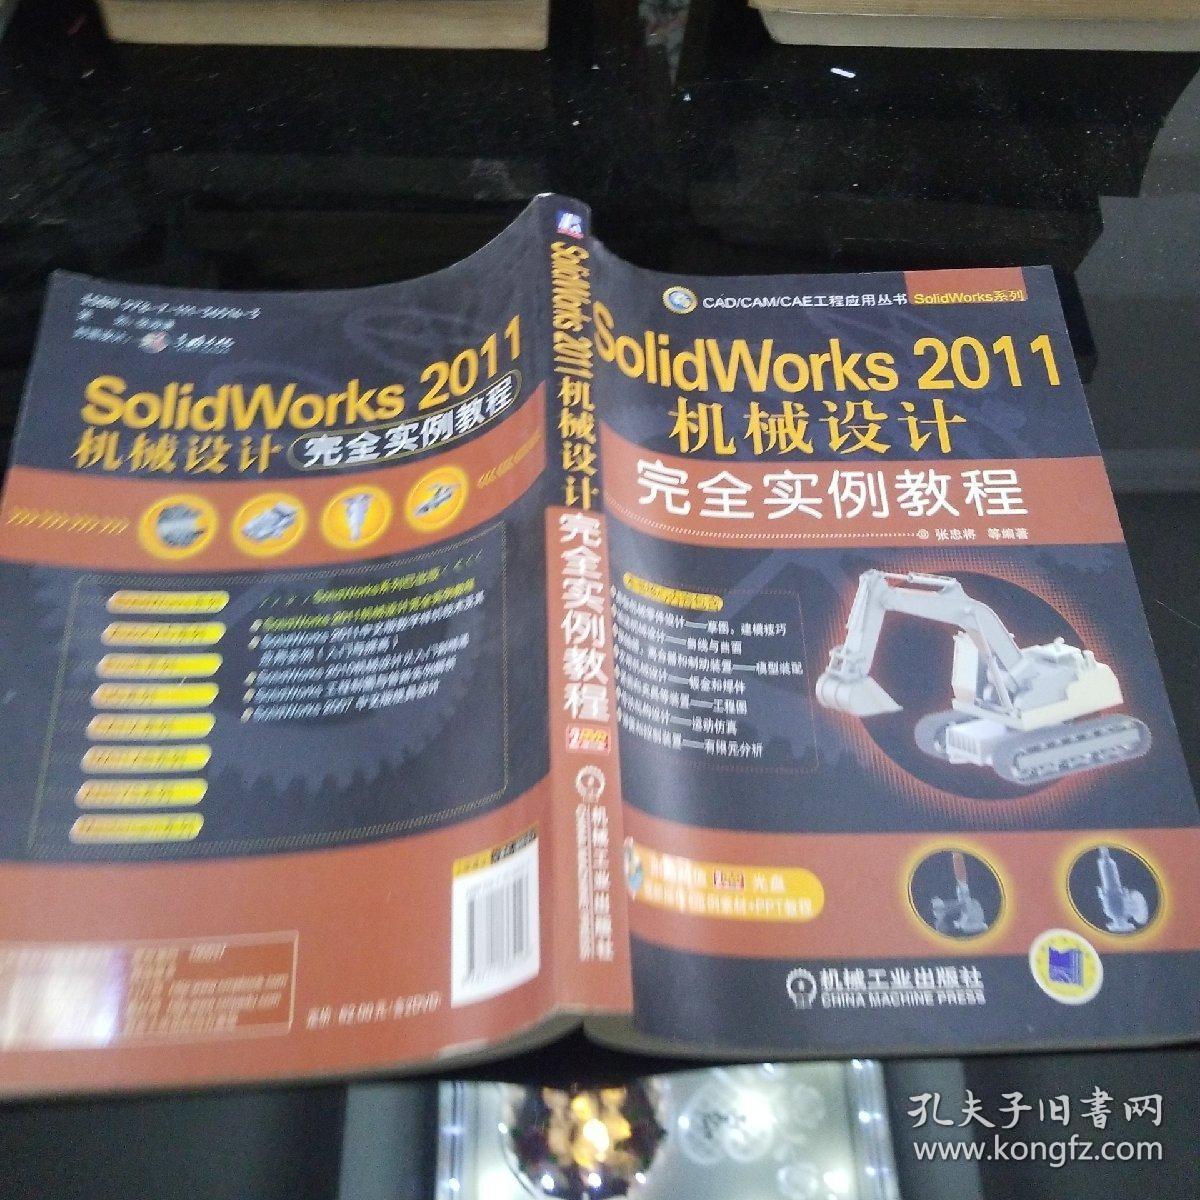 SolidWorks 2011机械设计完全实例教程